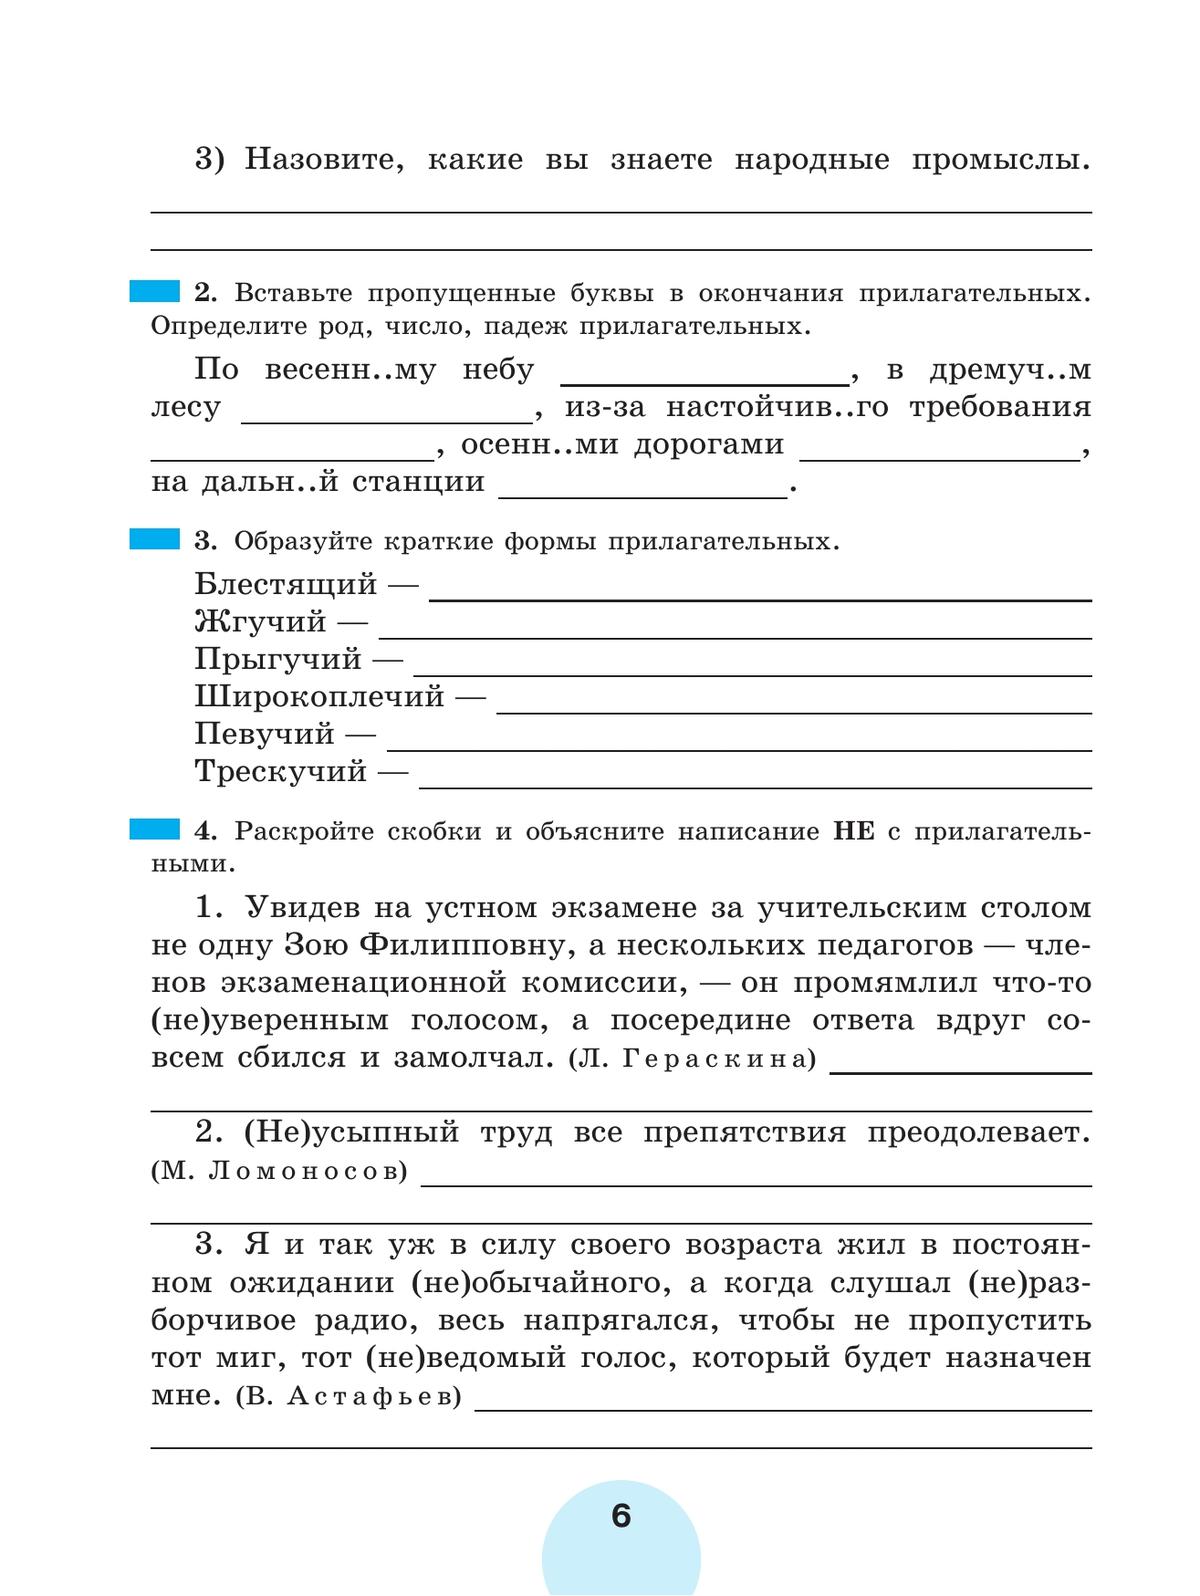 Русский язык. Рабочая тетрадь. 6 класс. В 2 ч. Часть 2 4